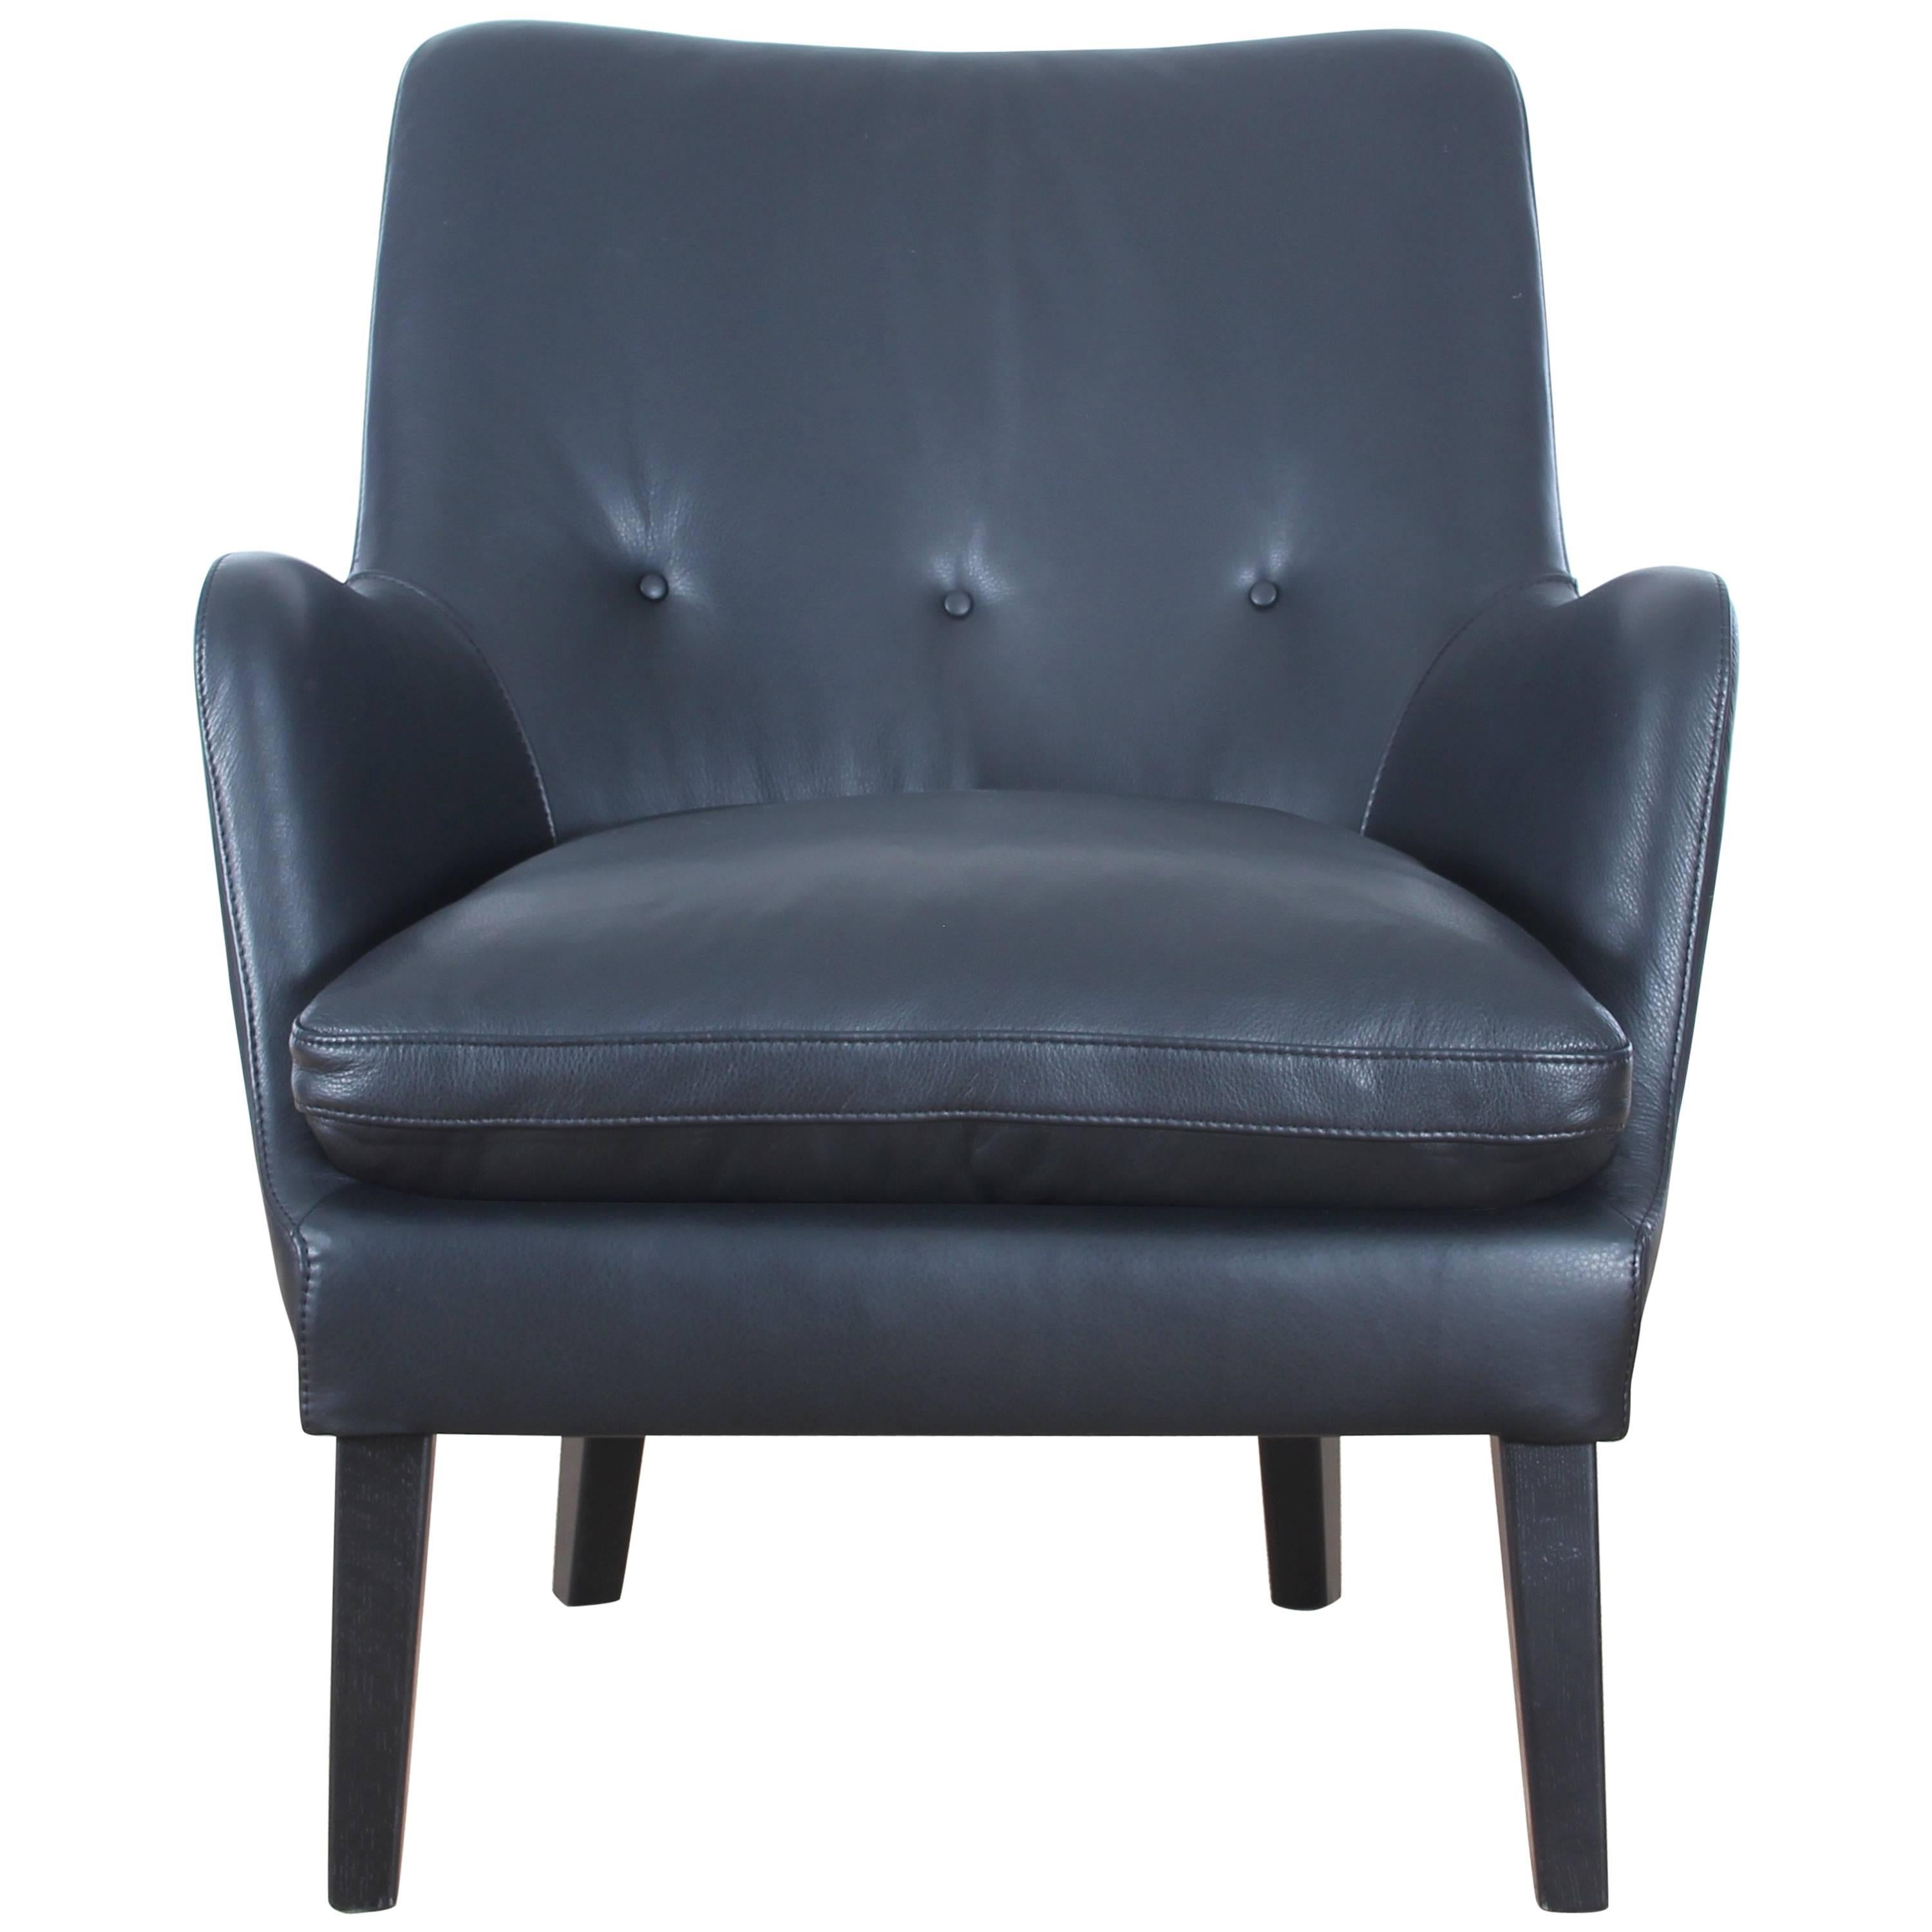 Mid-Century Modern Scandinavian Lounge Chair by Arne Vodder AV 53 New Release For Sale